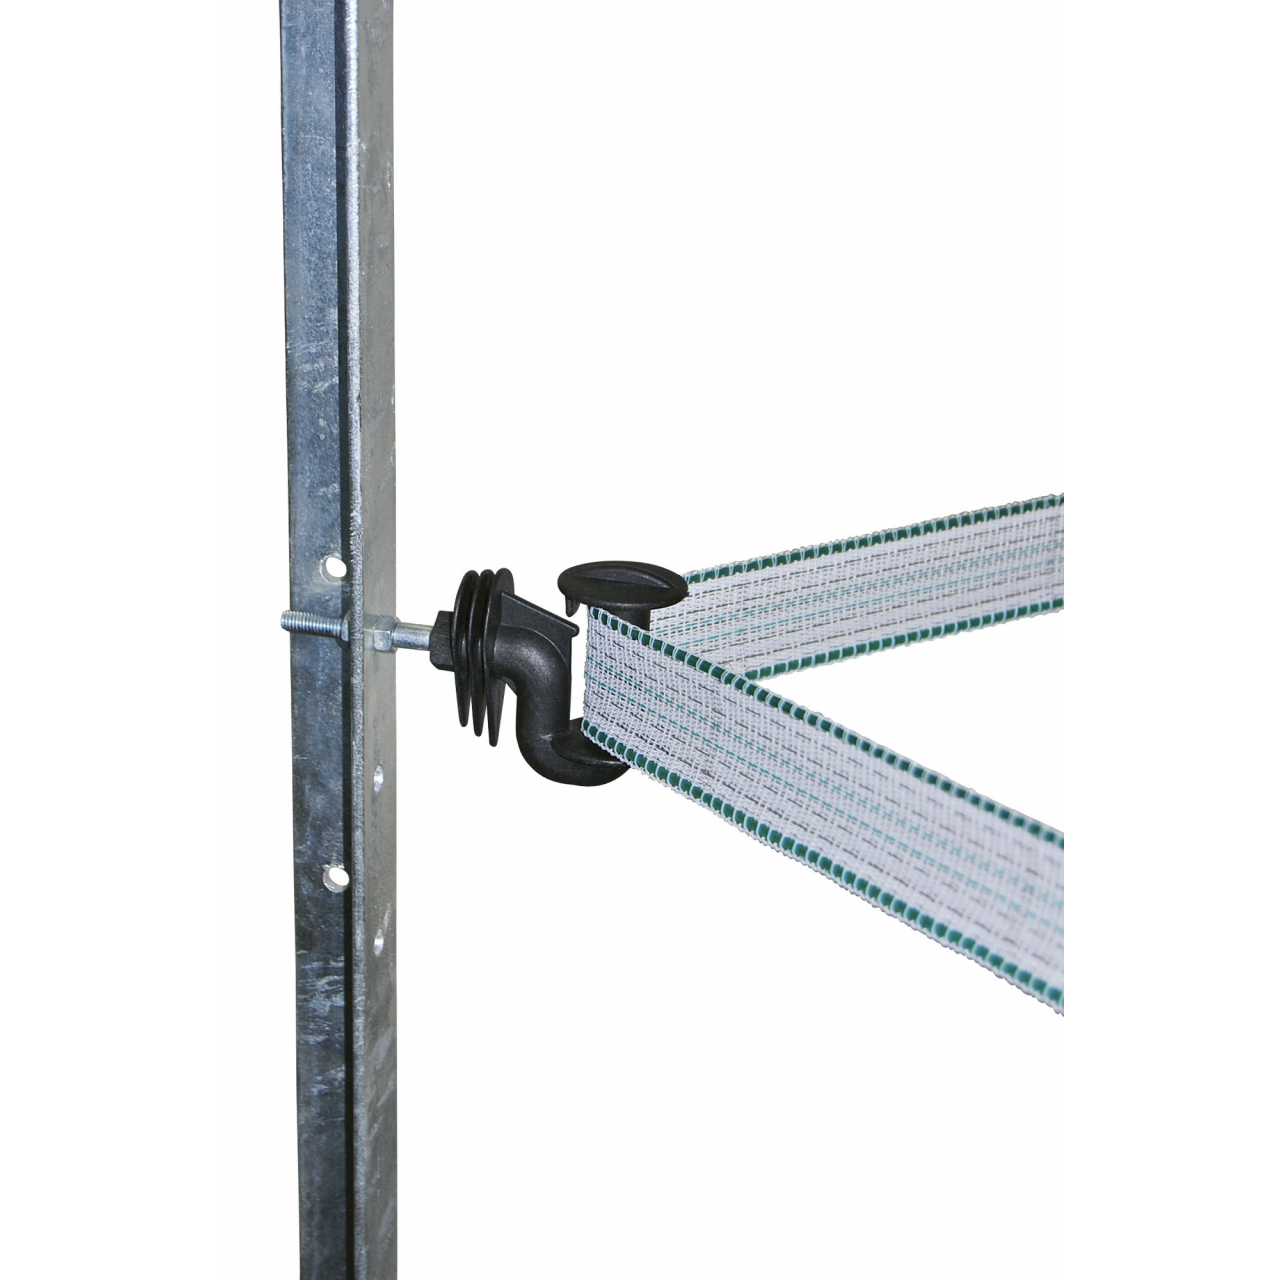 Cavallo metrikus sarokszigetelő villanypásztor szalaghoz - 10 db/cs